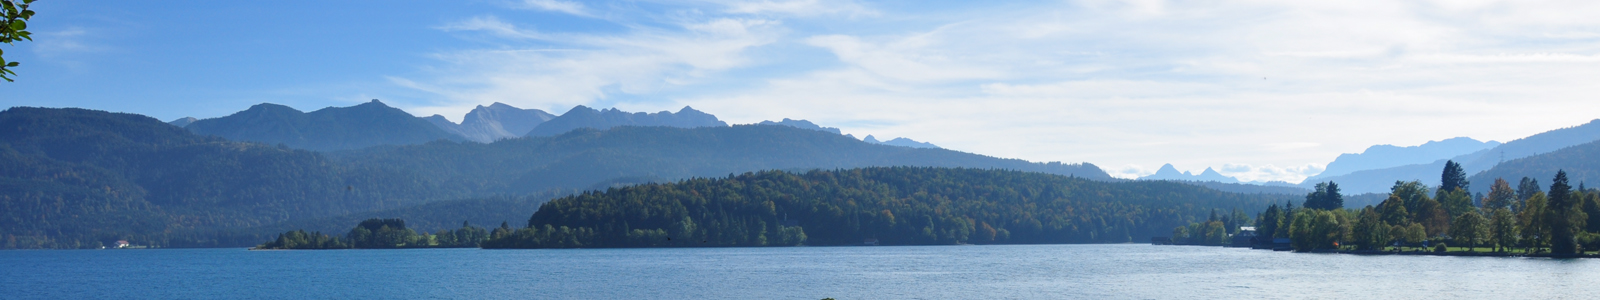 Im Voredergrund ein See, im Hintergrund Berge ©Preuss